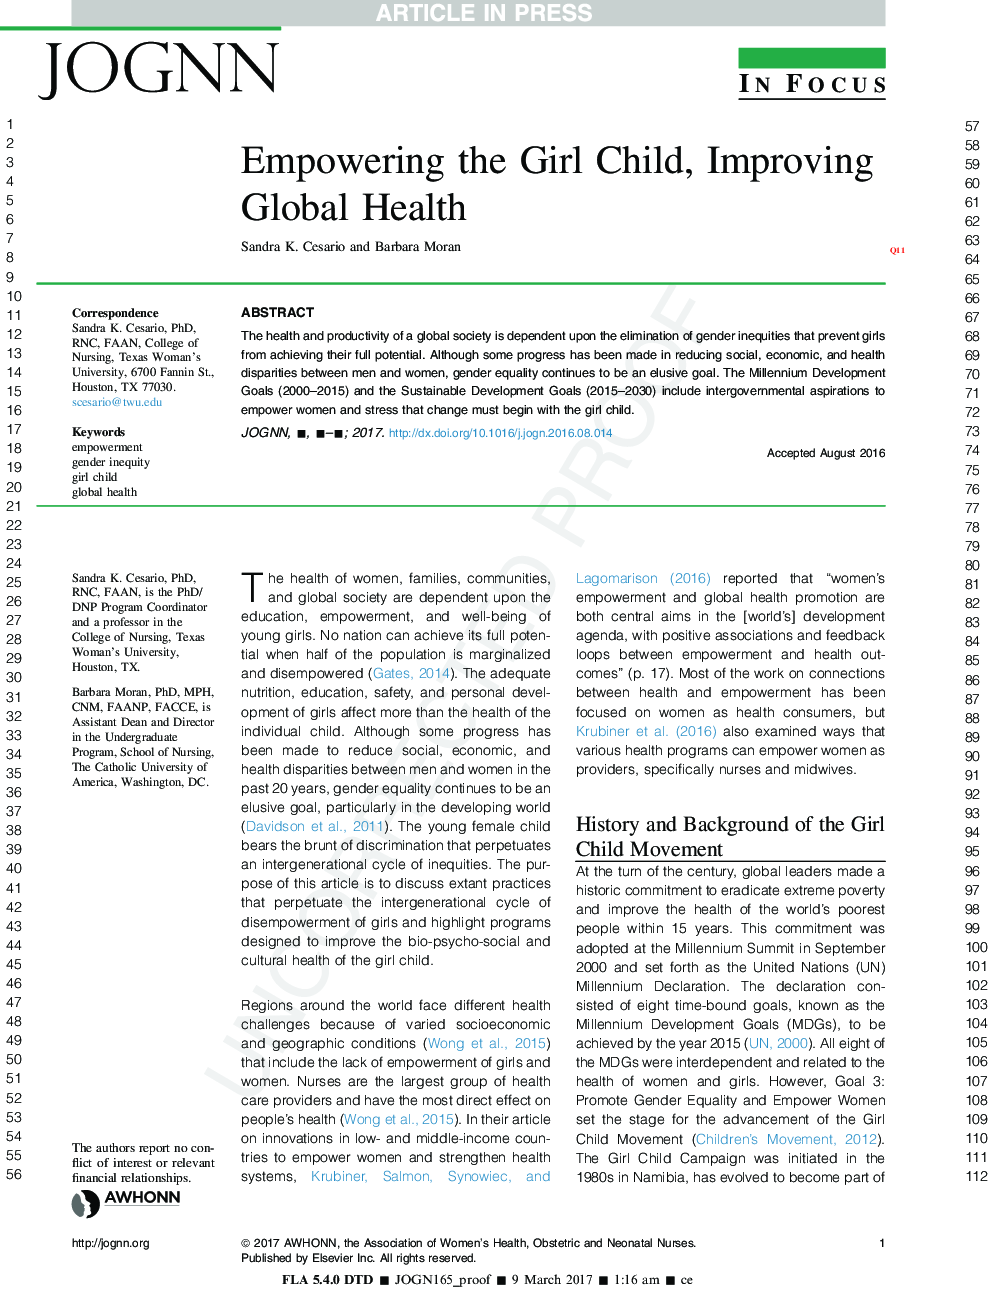 توانمندسازی فرزند دختر، بهبود سلامت جهانی 